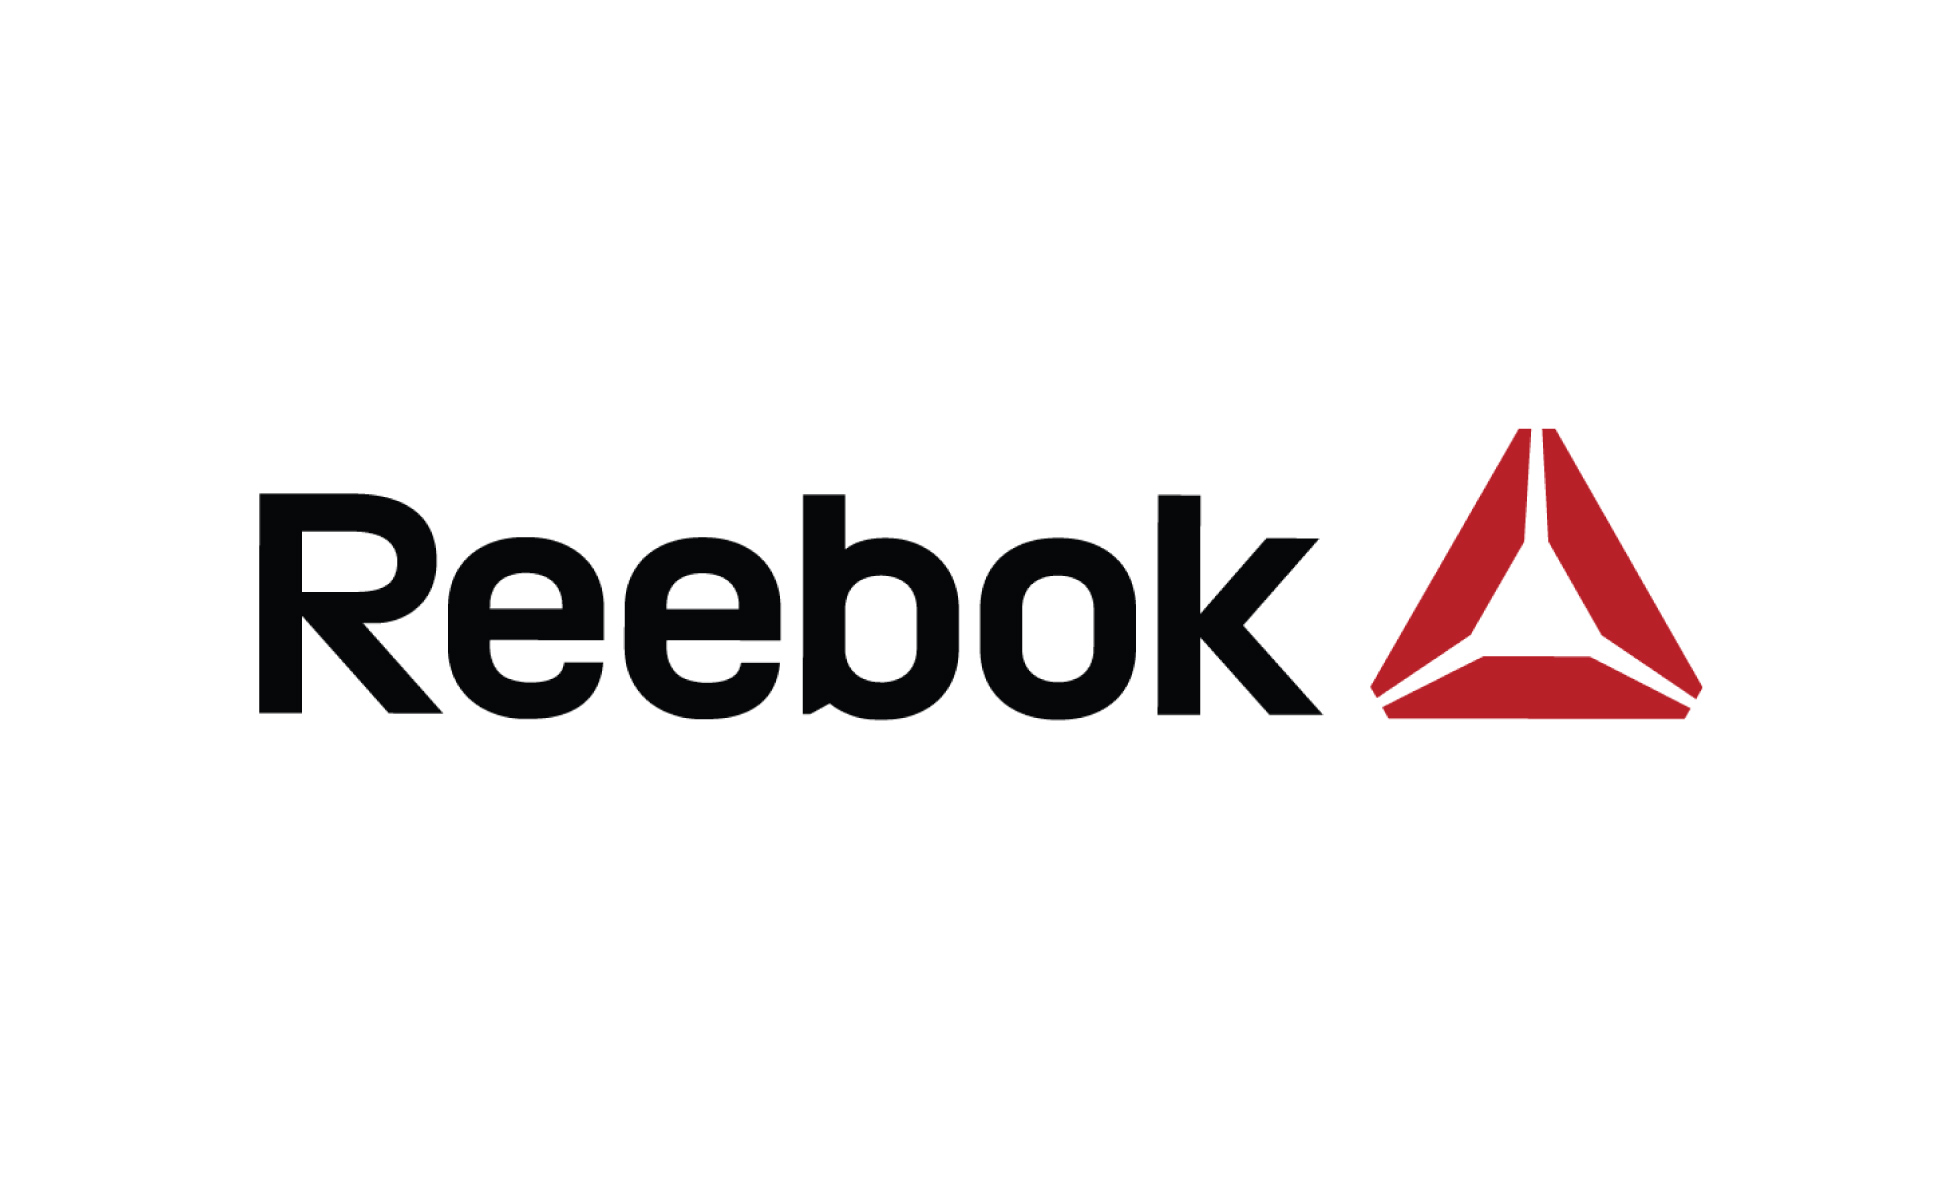 Rebranding-logo-reebok.jpg